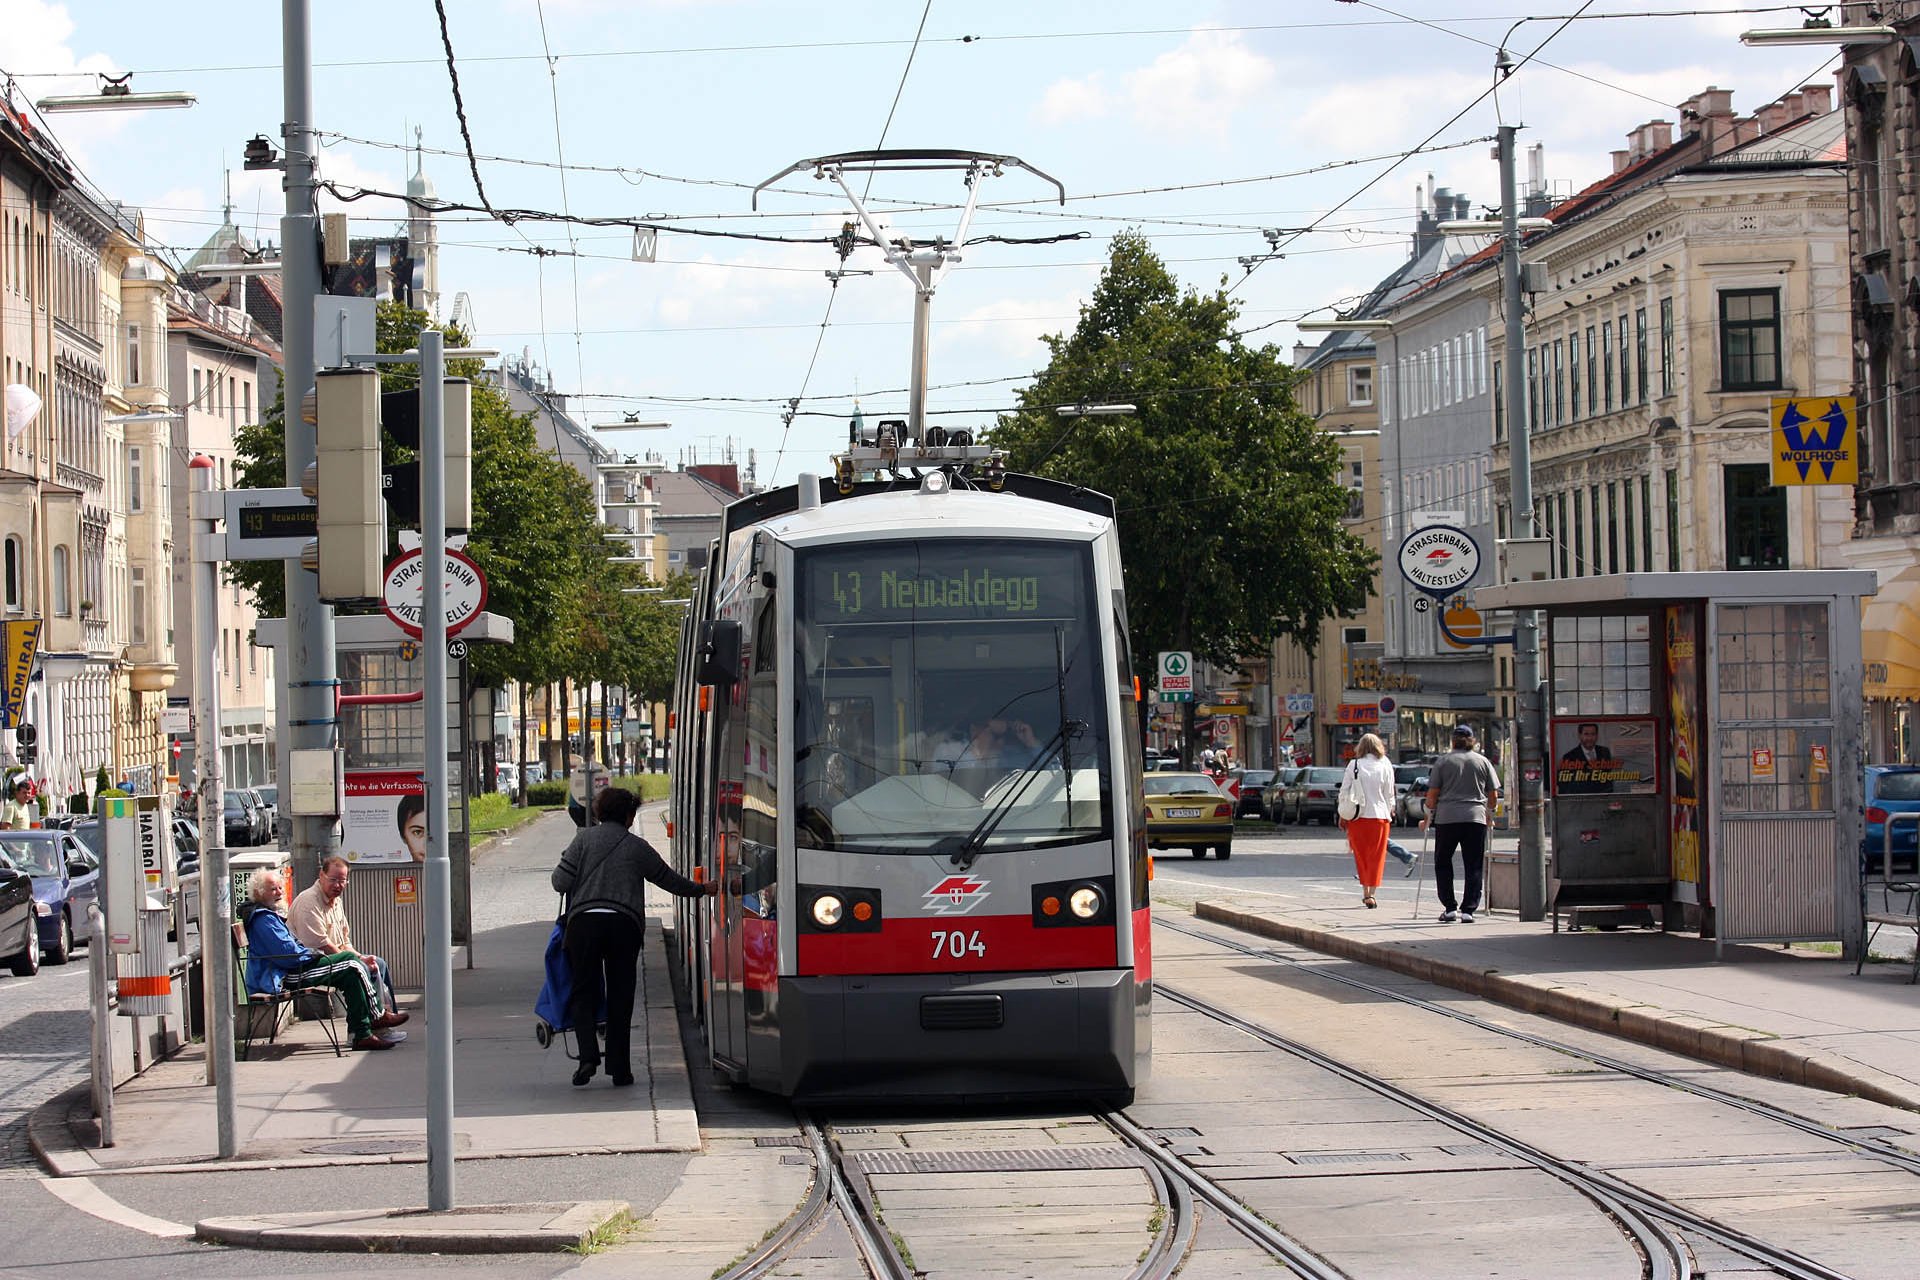 B1 704 70 B1 wurden in den Jahren 2009-2013 gebaut. Some 70 type B1 trams were built between 2009 and 2013.